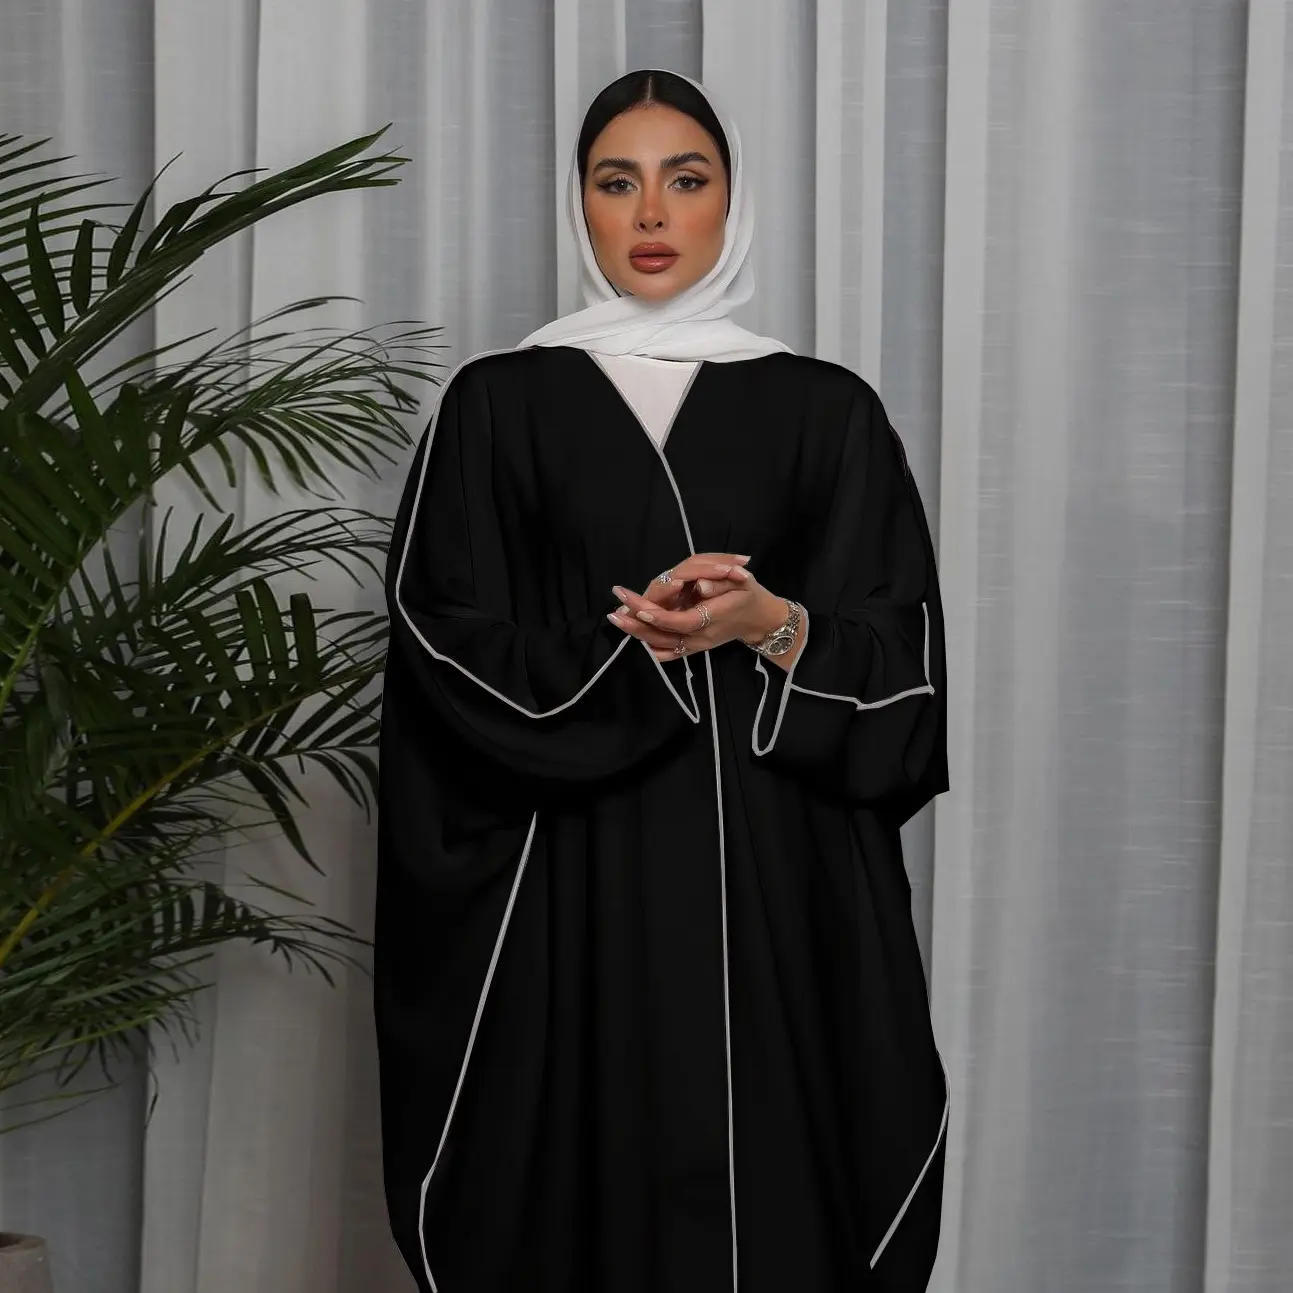 بيع بالجملة عباية ملابس تقليدية إسلامية طقم من قطعتين تركيا دبي فستان طويل إسلامي سادة للنساء عباية مفتوحة سترة